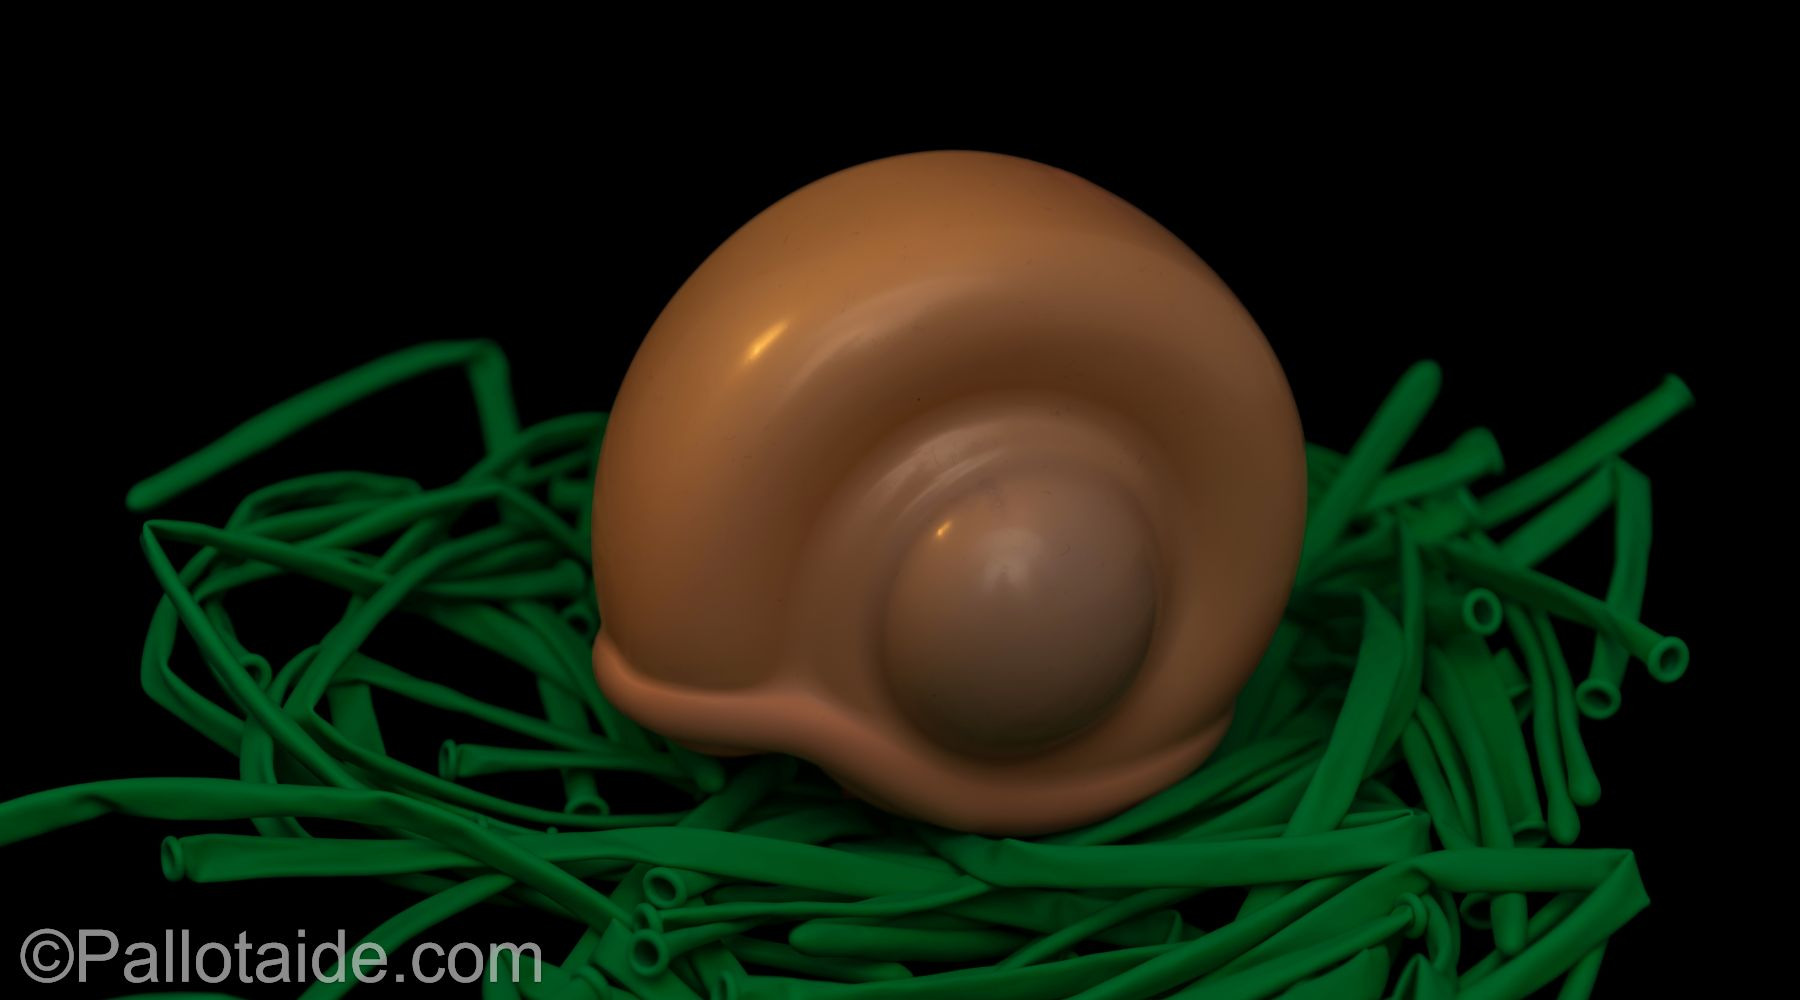 snail shell - made using 100% latex balloons by Pallotaide - tehty pelkistä lateksi-ilmapalloista. Etanan kuori.